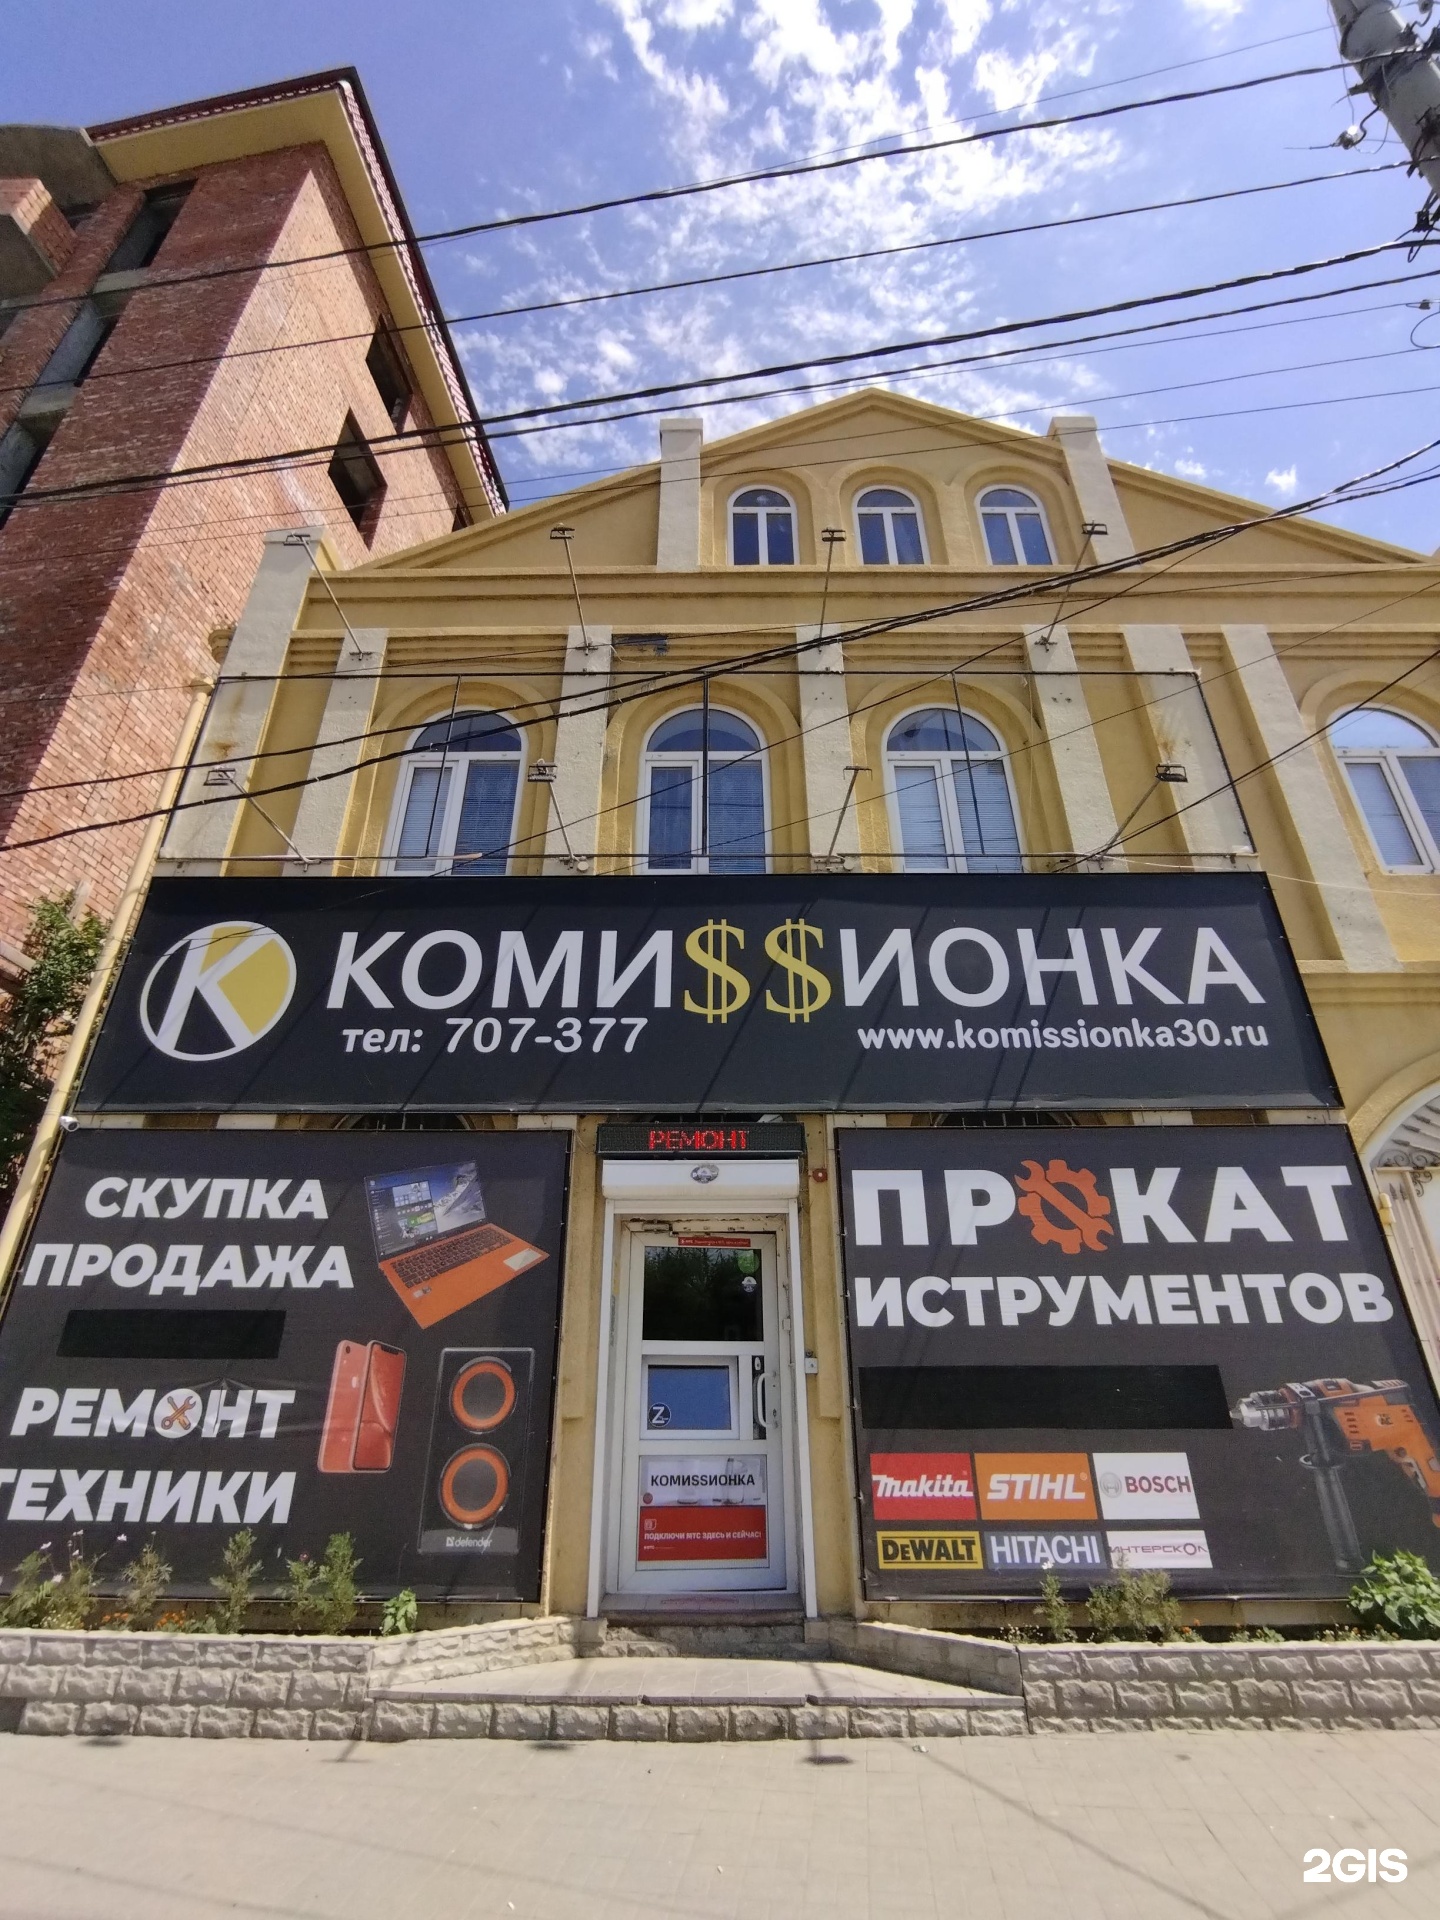 Комиссионный магазин маяк. Комиссионный магазин баннер. Комиссионный магазин в Новочебоксарске. Хозяин комиссионки.